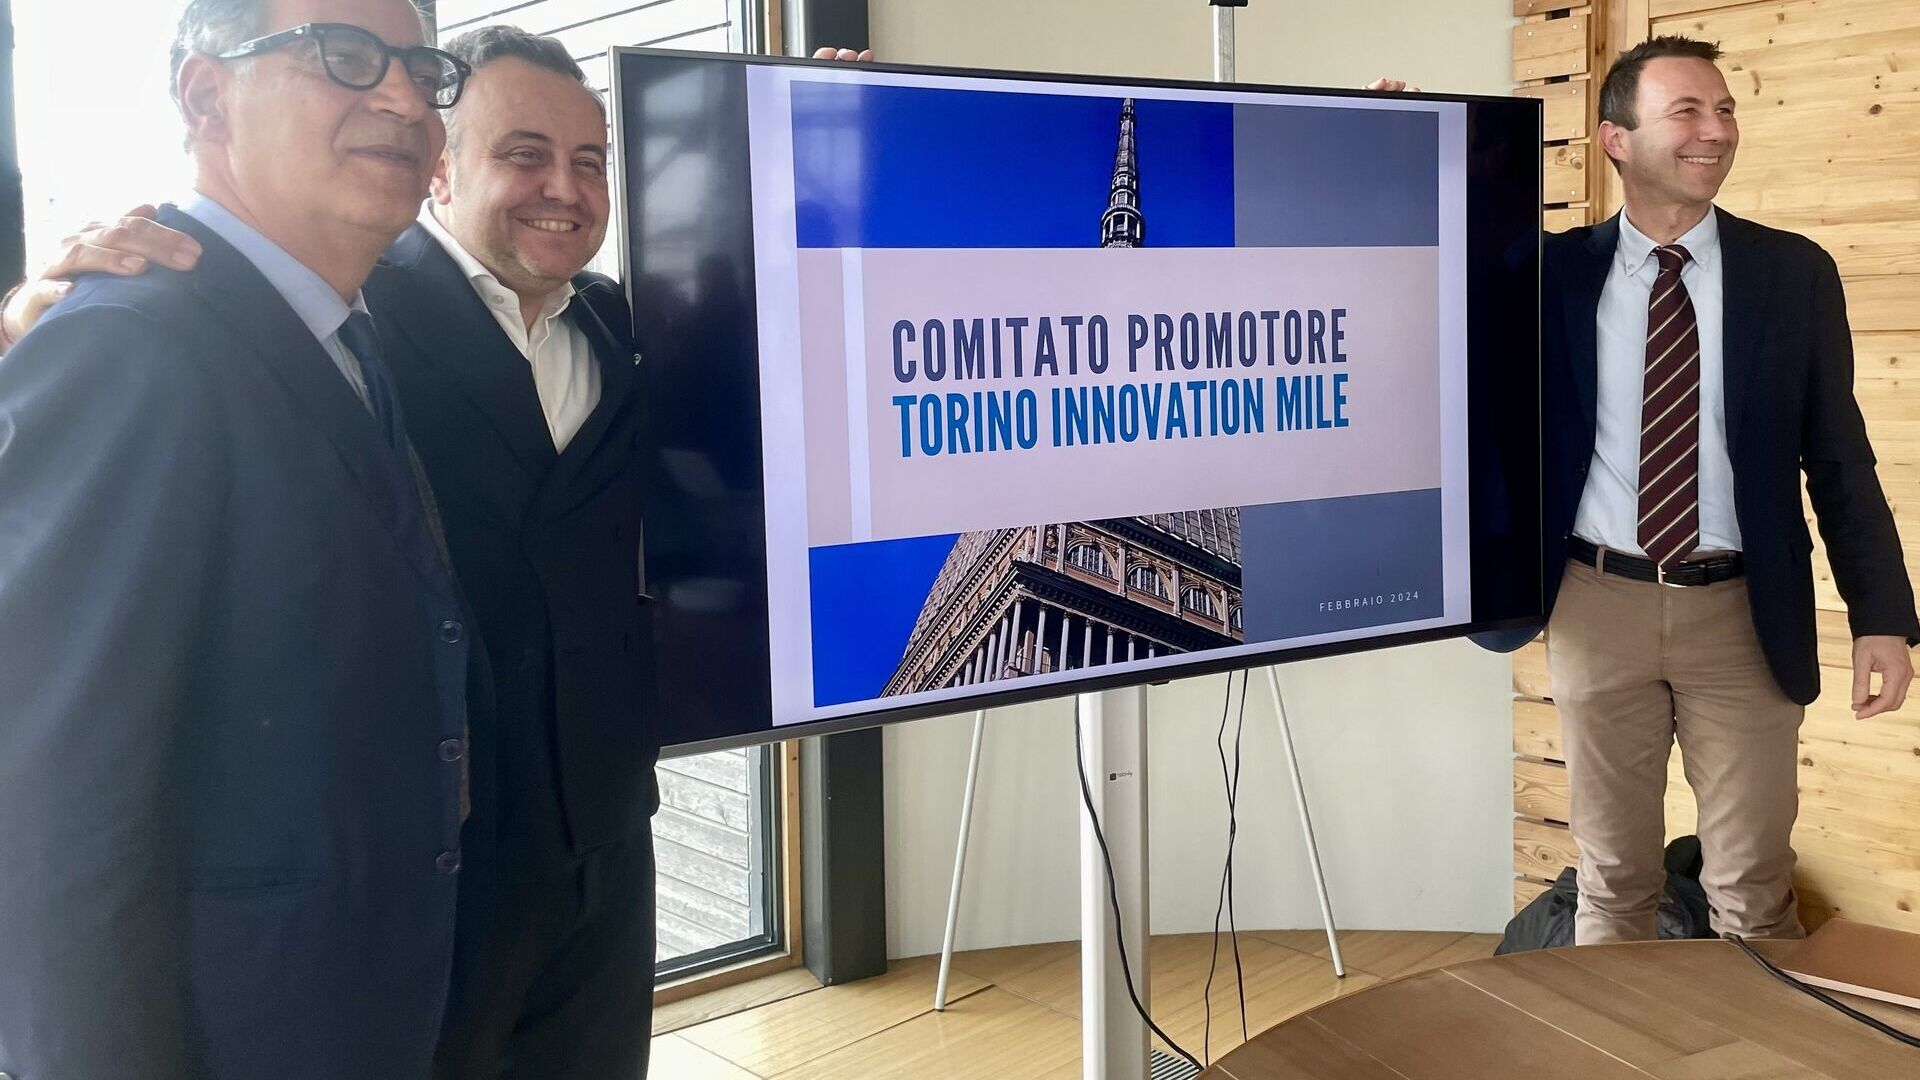 Turin Innovation Mile: koordinacija Promotivnog odbora bit će povjerena predsjedniku Davideu Canaveziu, također na vrhu Nexta, i dvojici potpredsjednika, Stefanu Corgnatiju, izabranom rektoru Politehnike u Torinu, i Giacomu Portasu, predsjedniku Parka životne sredine